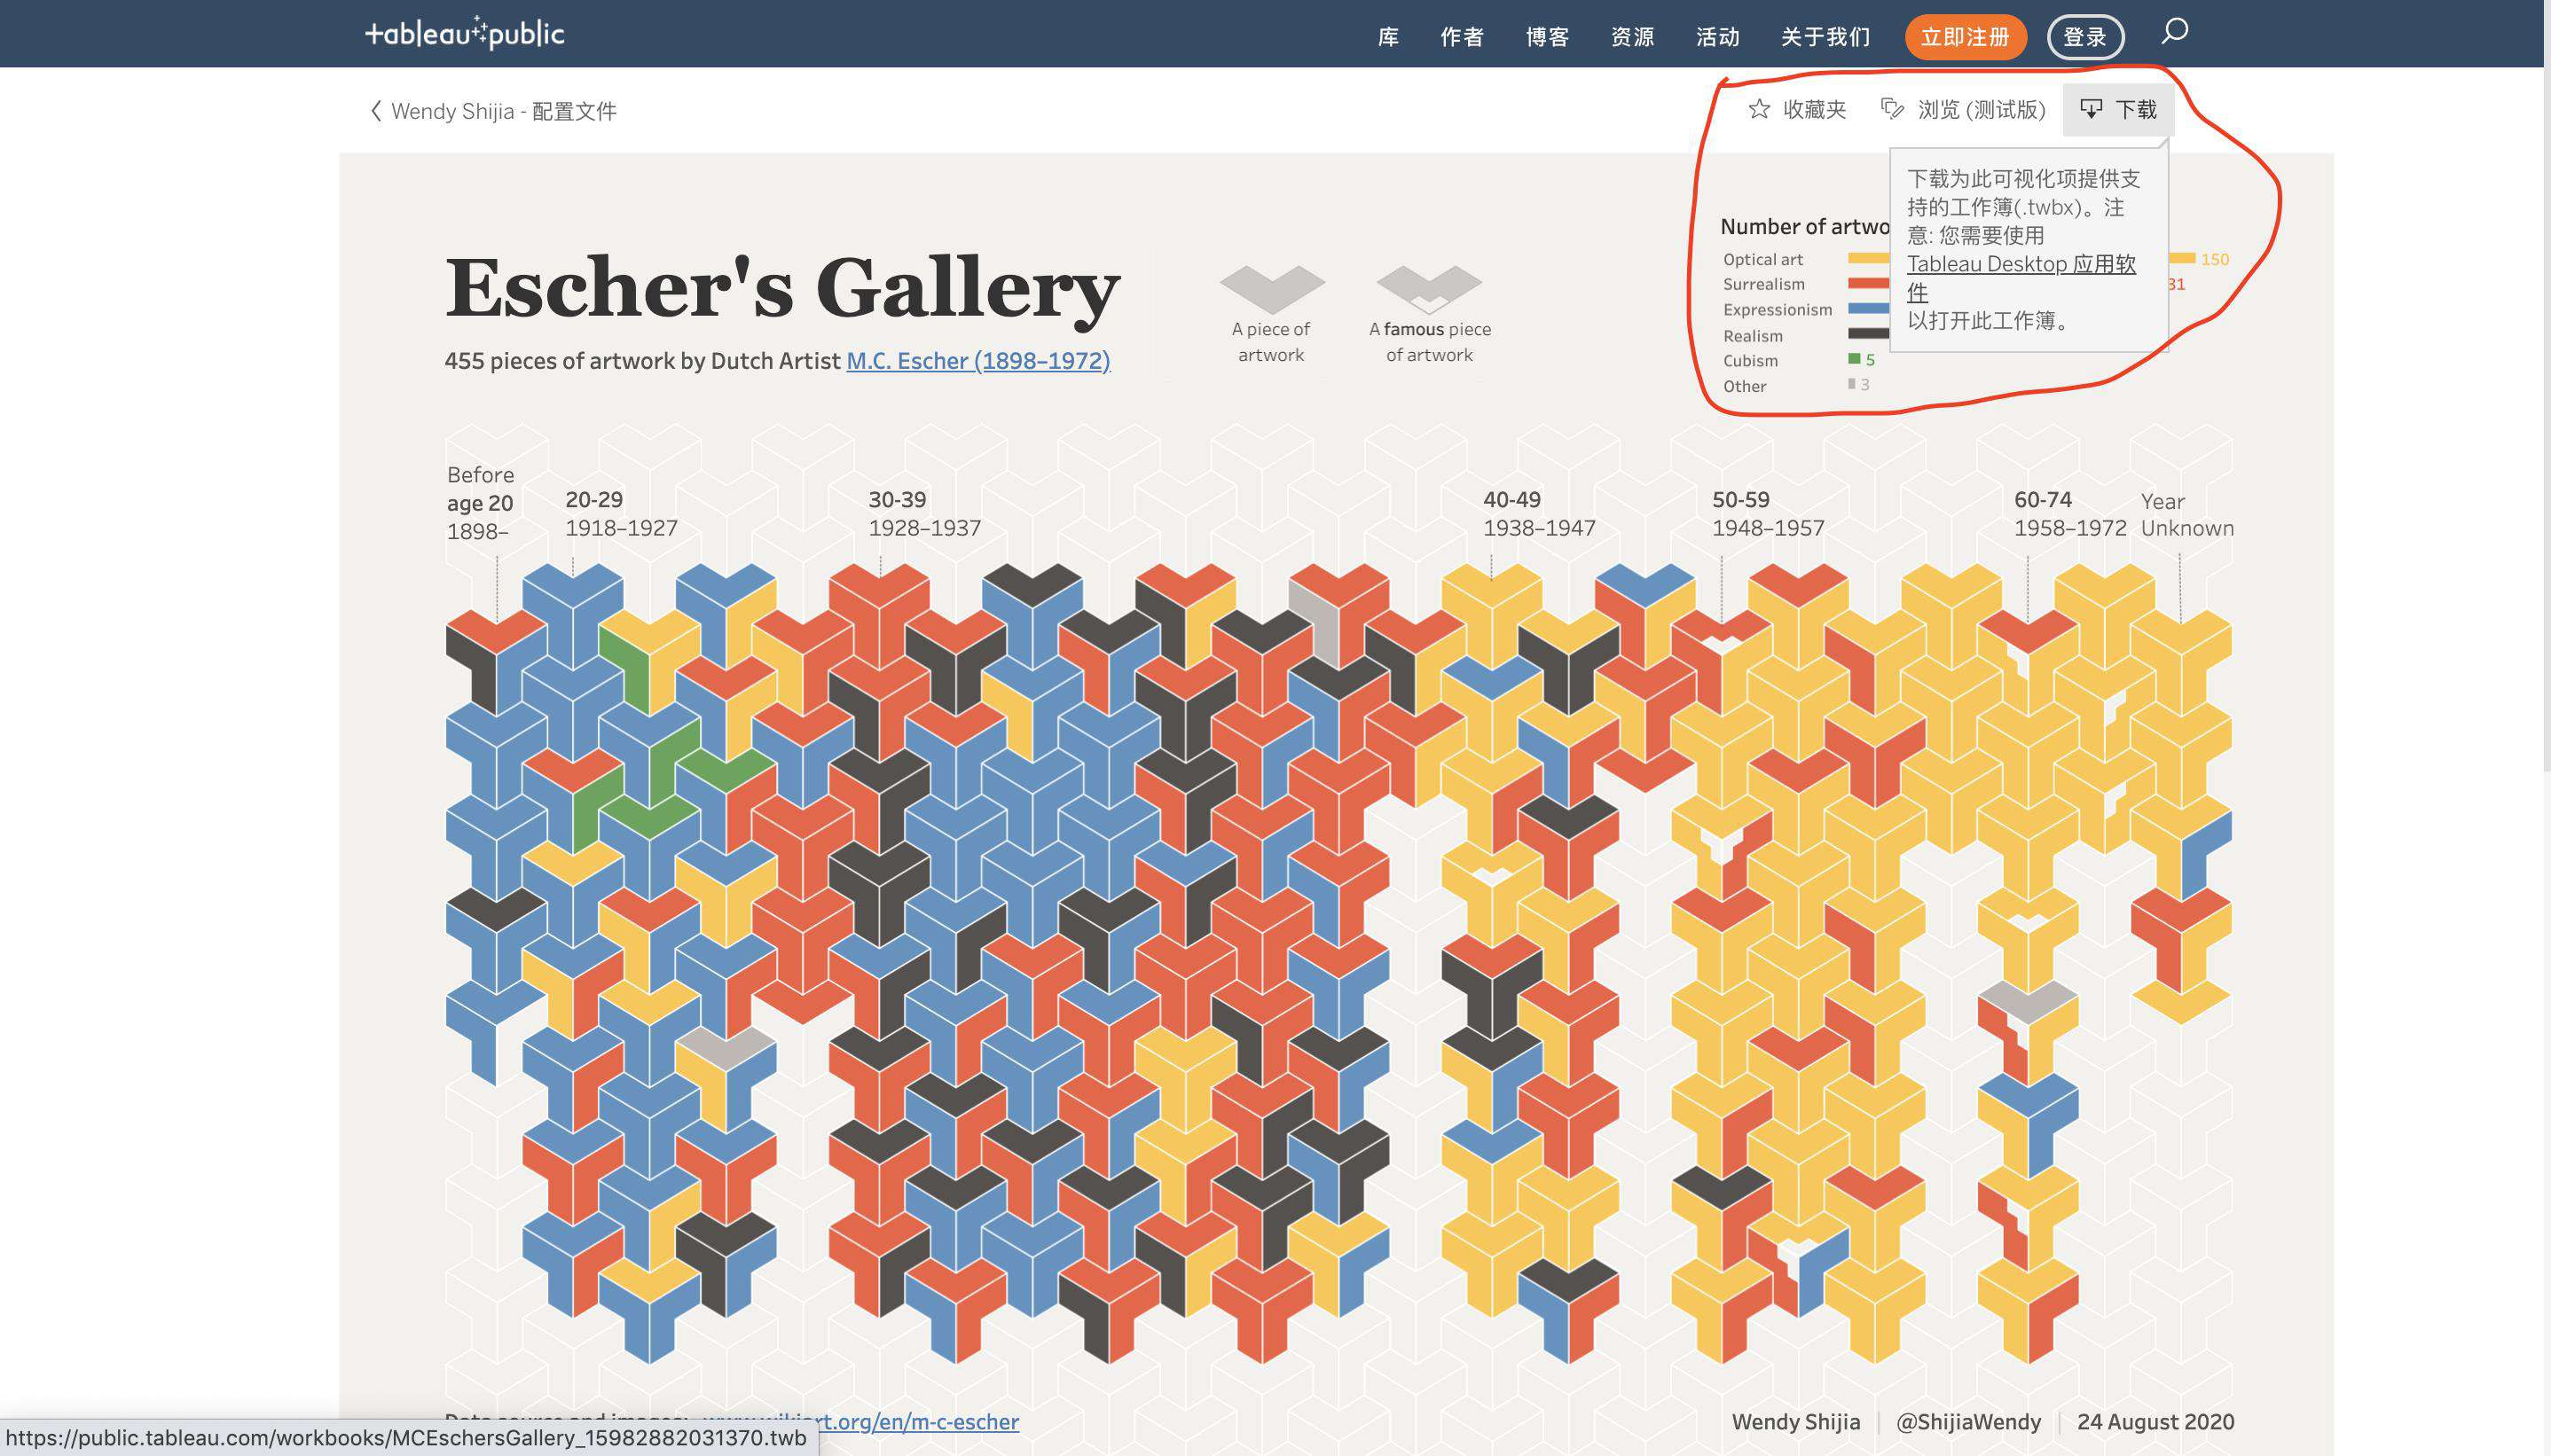 Wendy Shijia 的「 Escher's Gallery」可视化作品复现系列文章(三)